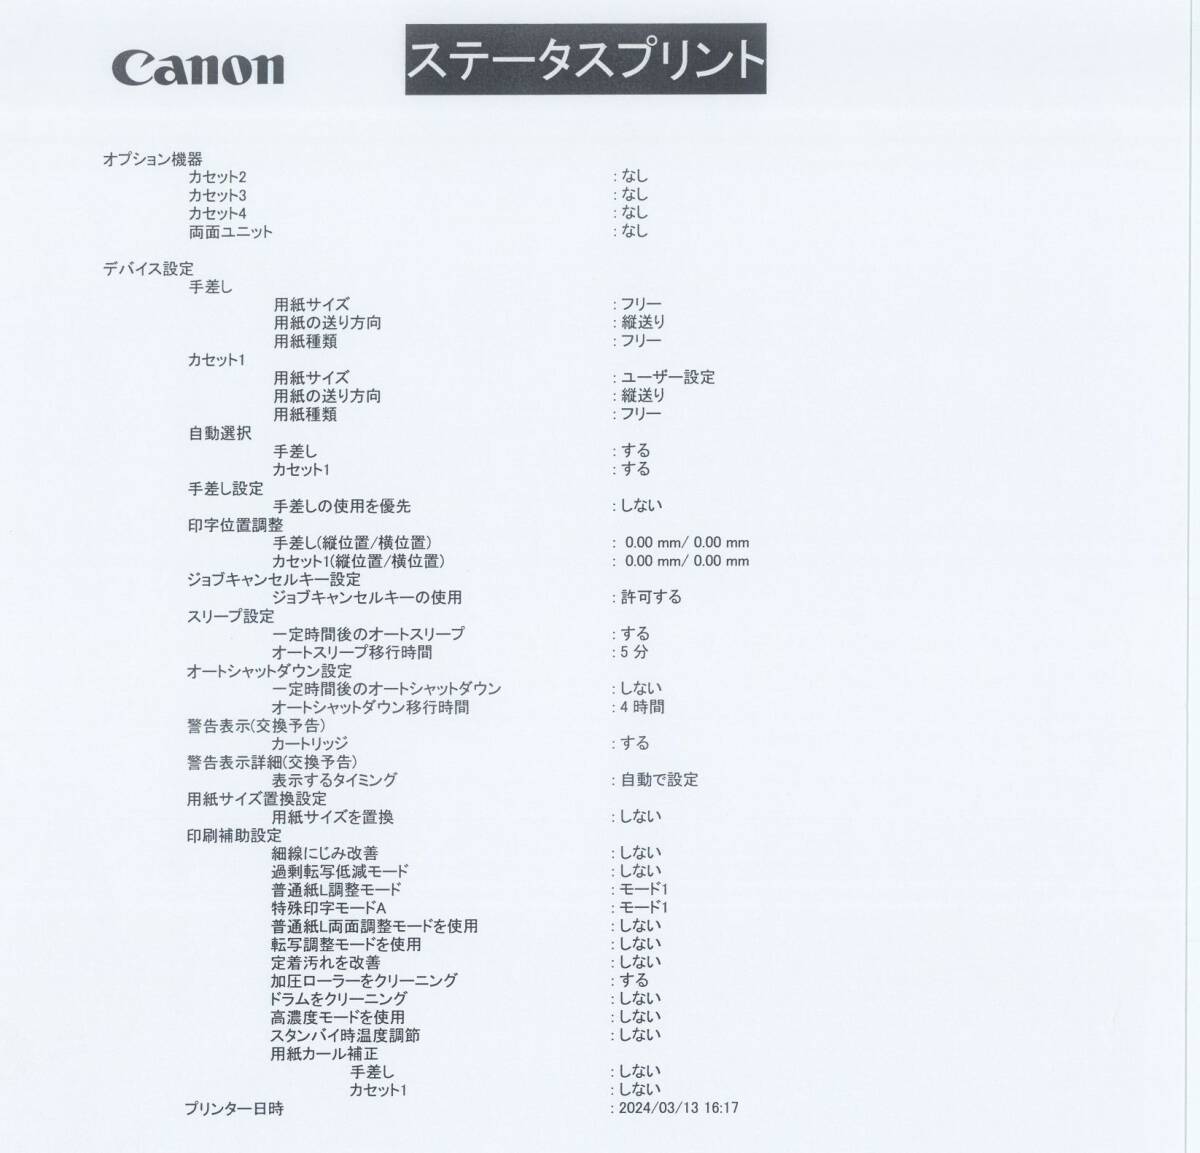 Canon/キヤノン A3 モノクロ レーザー プリンター LBP8100 印刷枚数:25343枚 中古トナー付 一週間返品保証【H24031315】_画像9